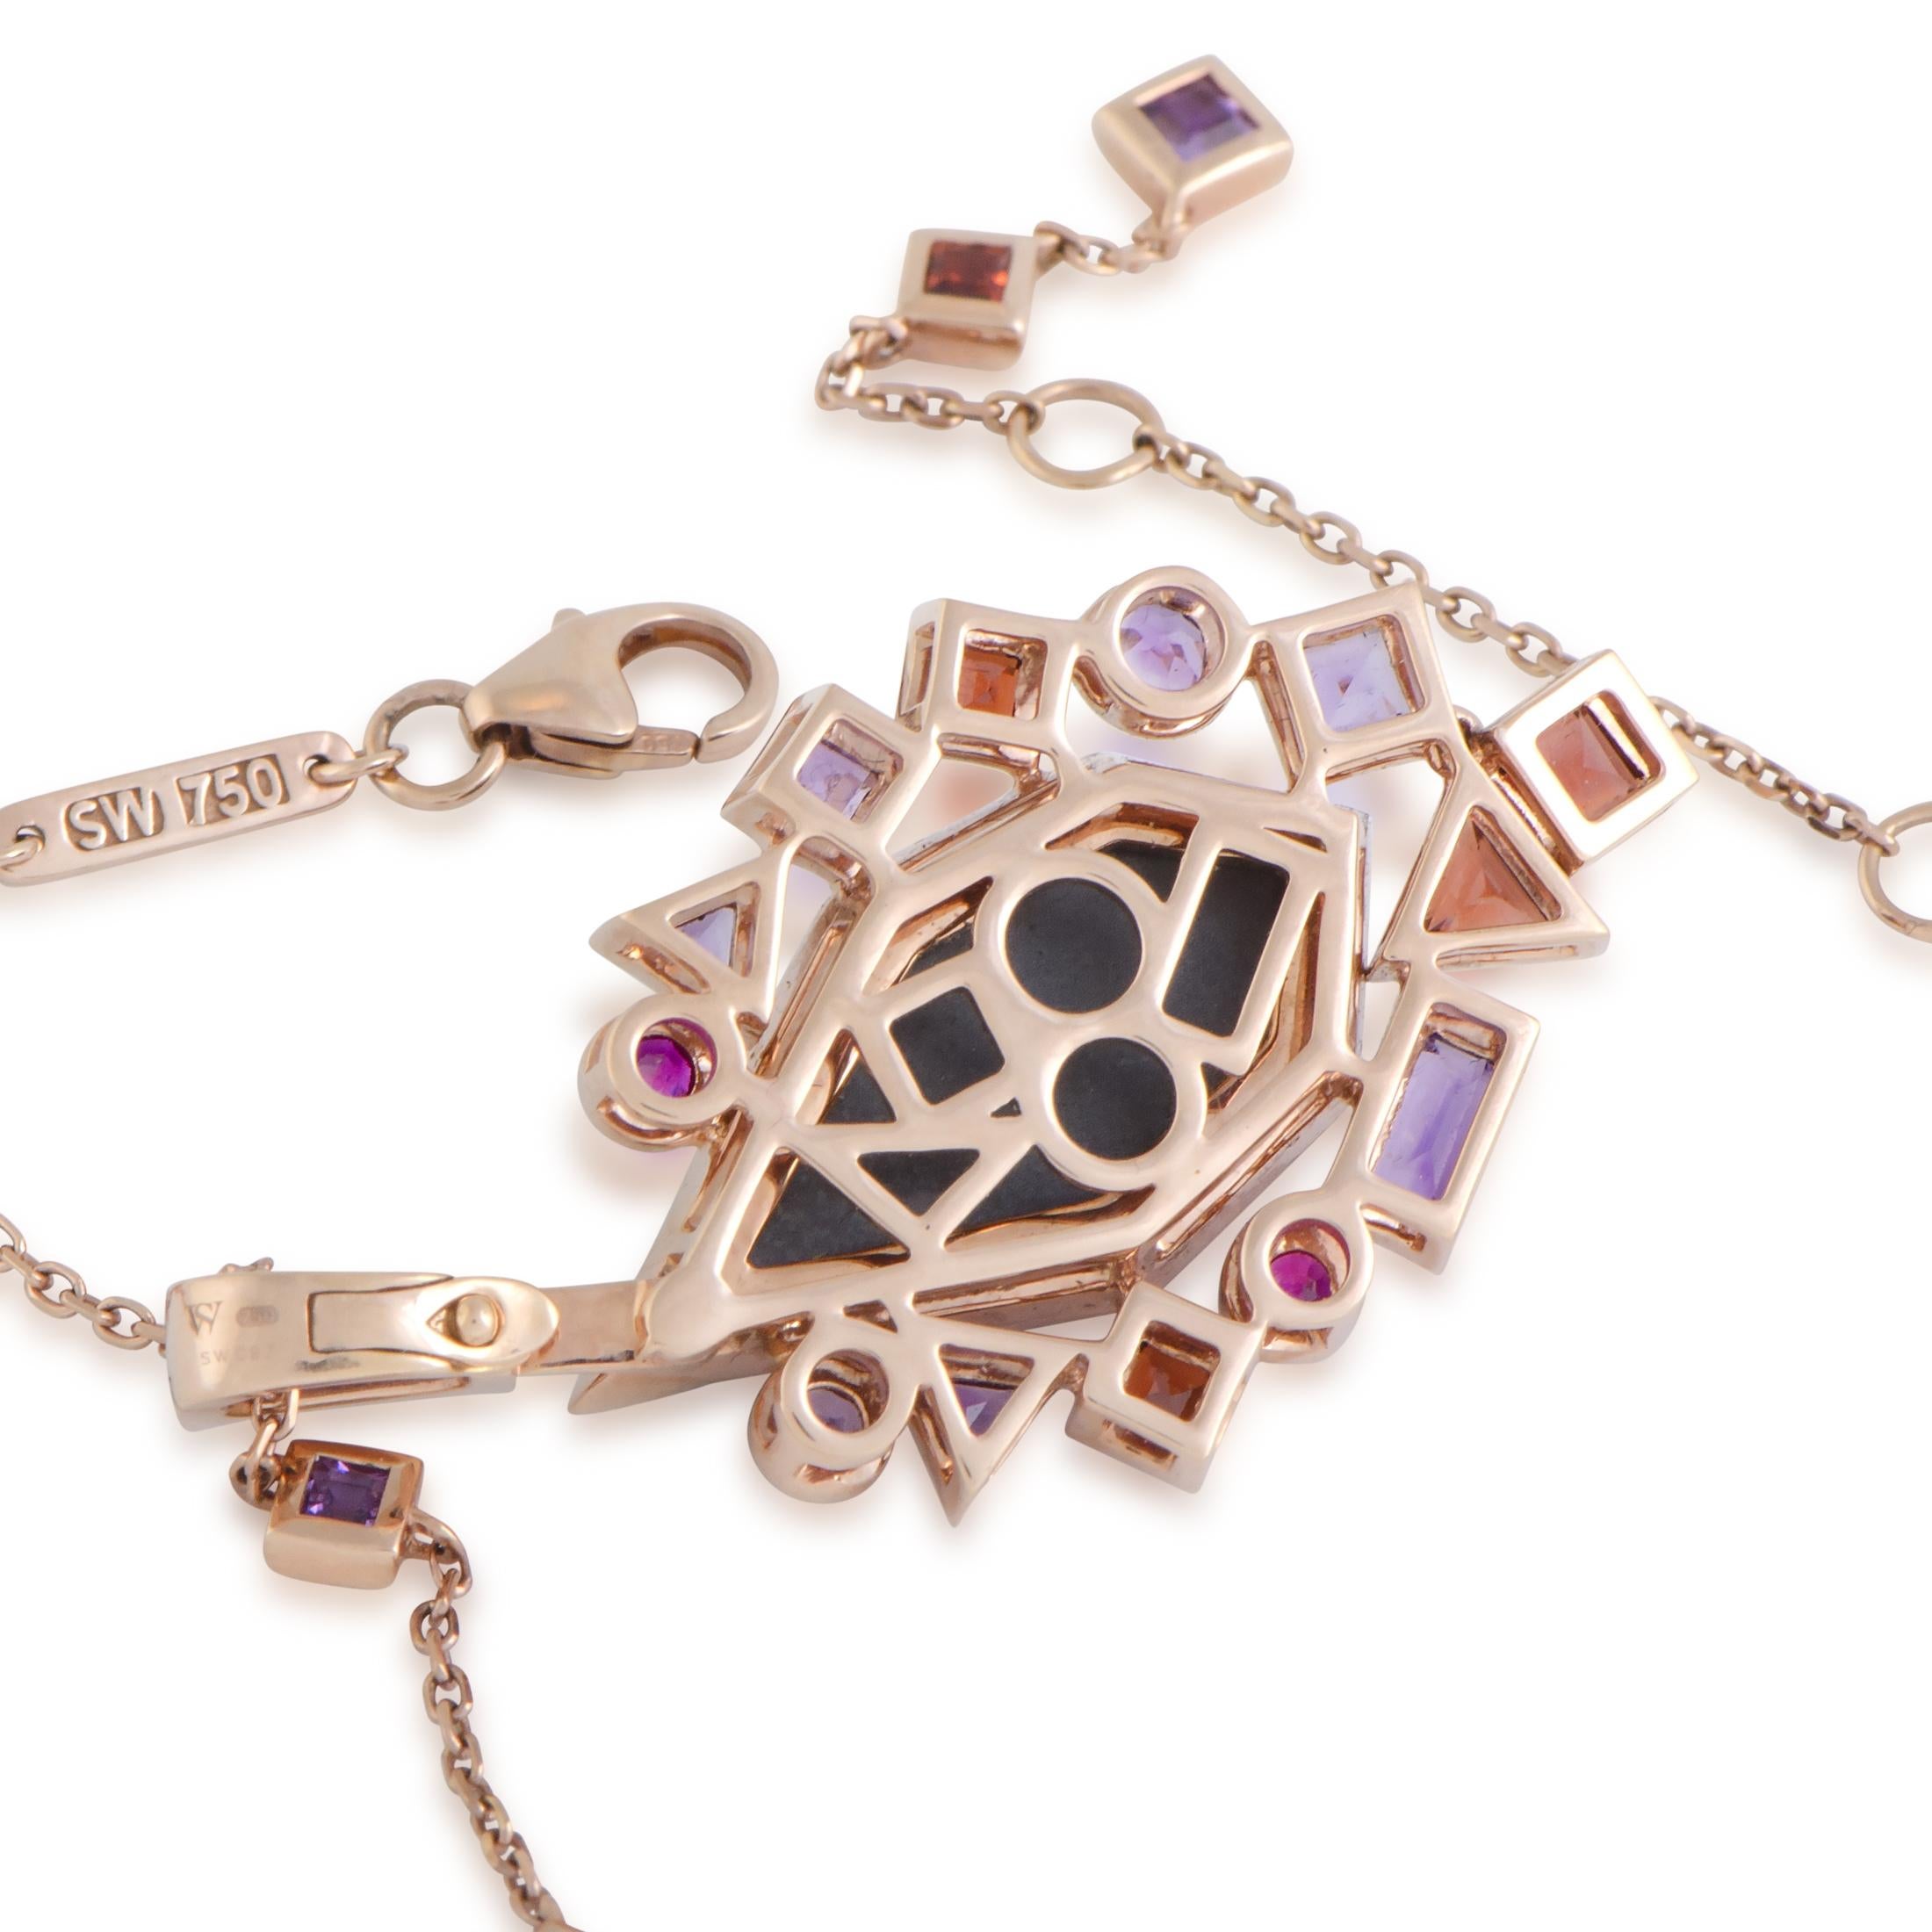 Mixed Cut Stephen Webster Goldstruck 18 Karat Rose Gold Multi-Gemstone Pendant Necklace